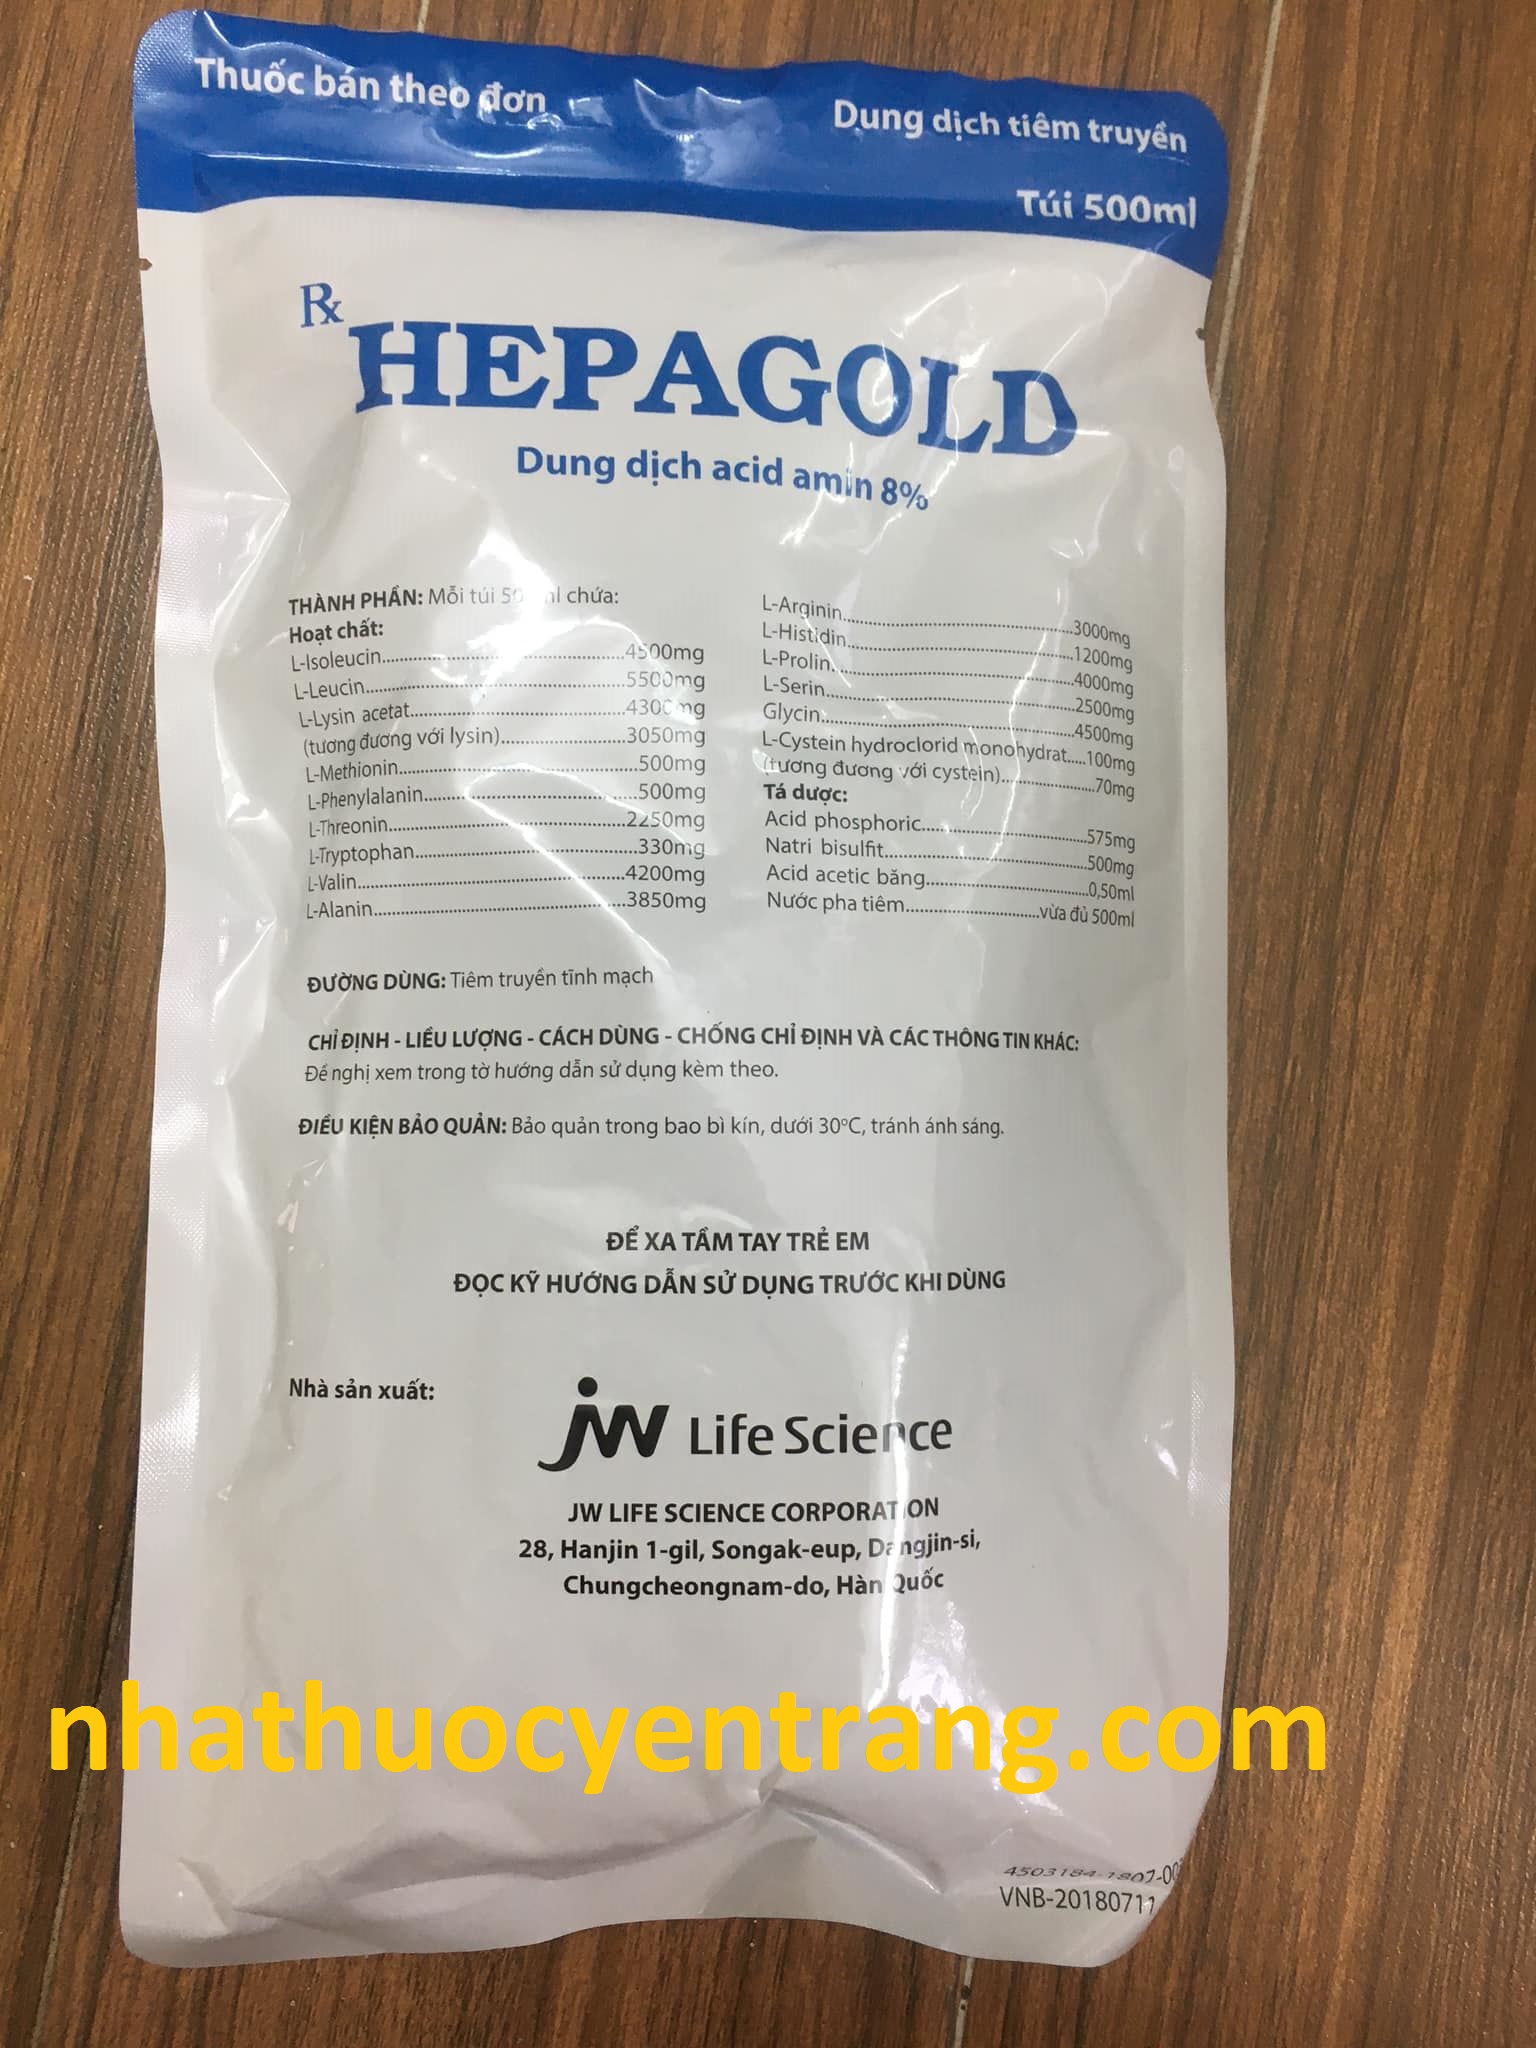 Hepagold 500ml